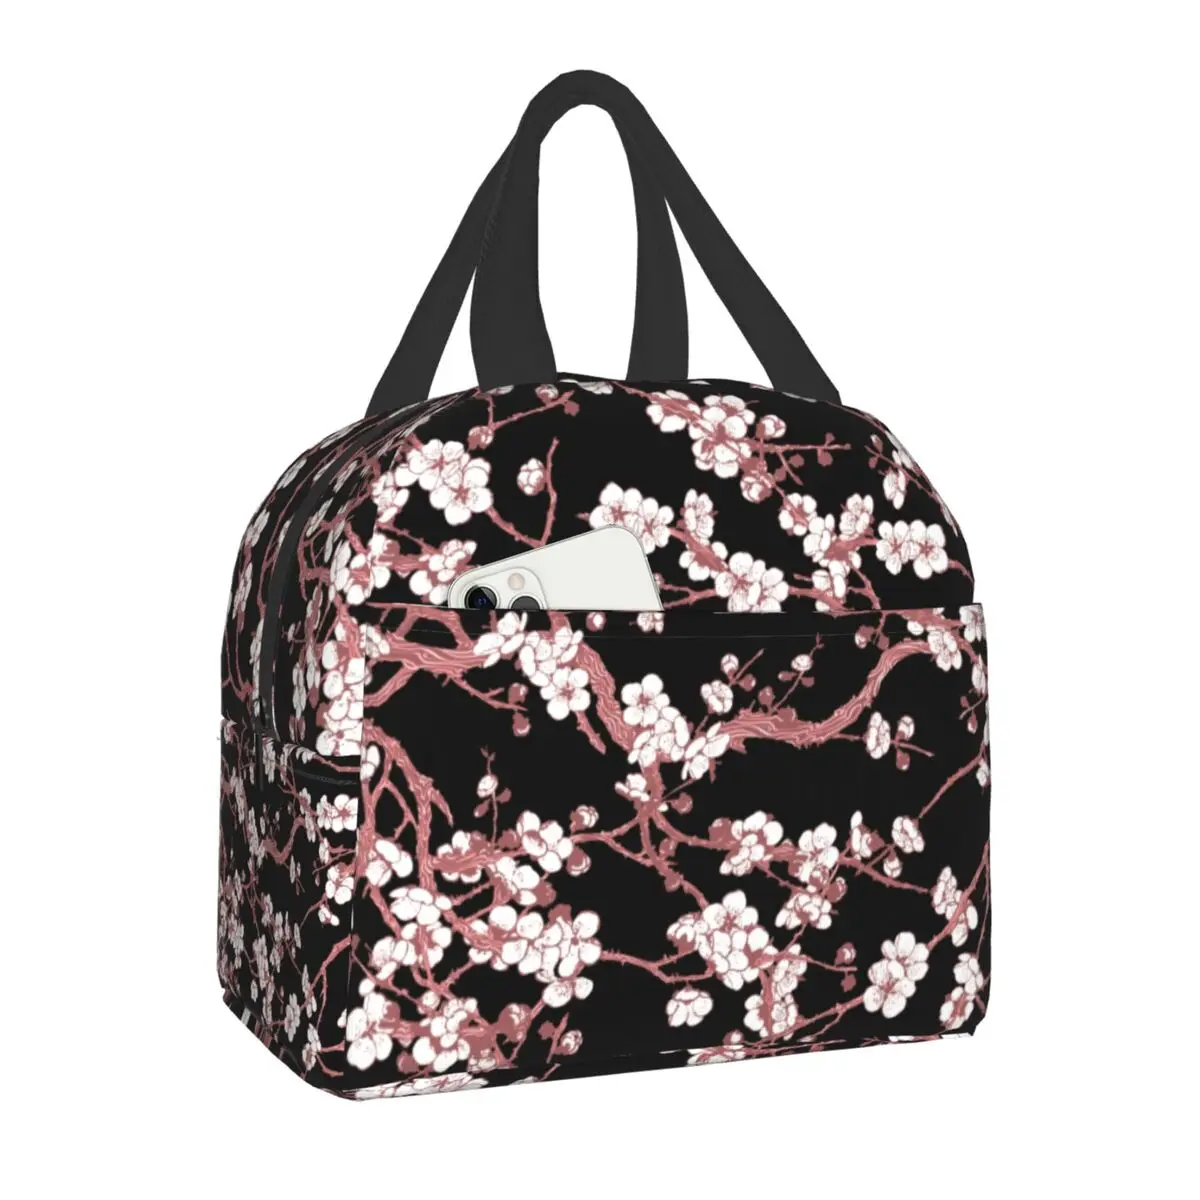 

Изолированная сумка для обеда с цветком сакуры вишни, термоохлаждающий контейнер для обеда с цветами, для офиса, пикника, путешествий